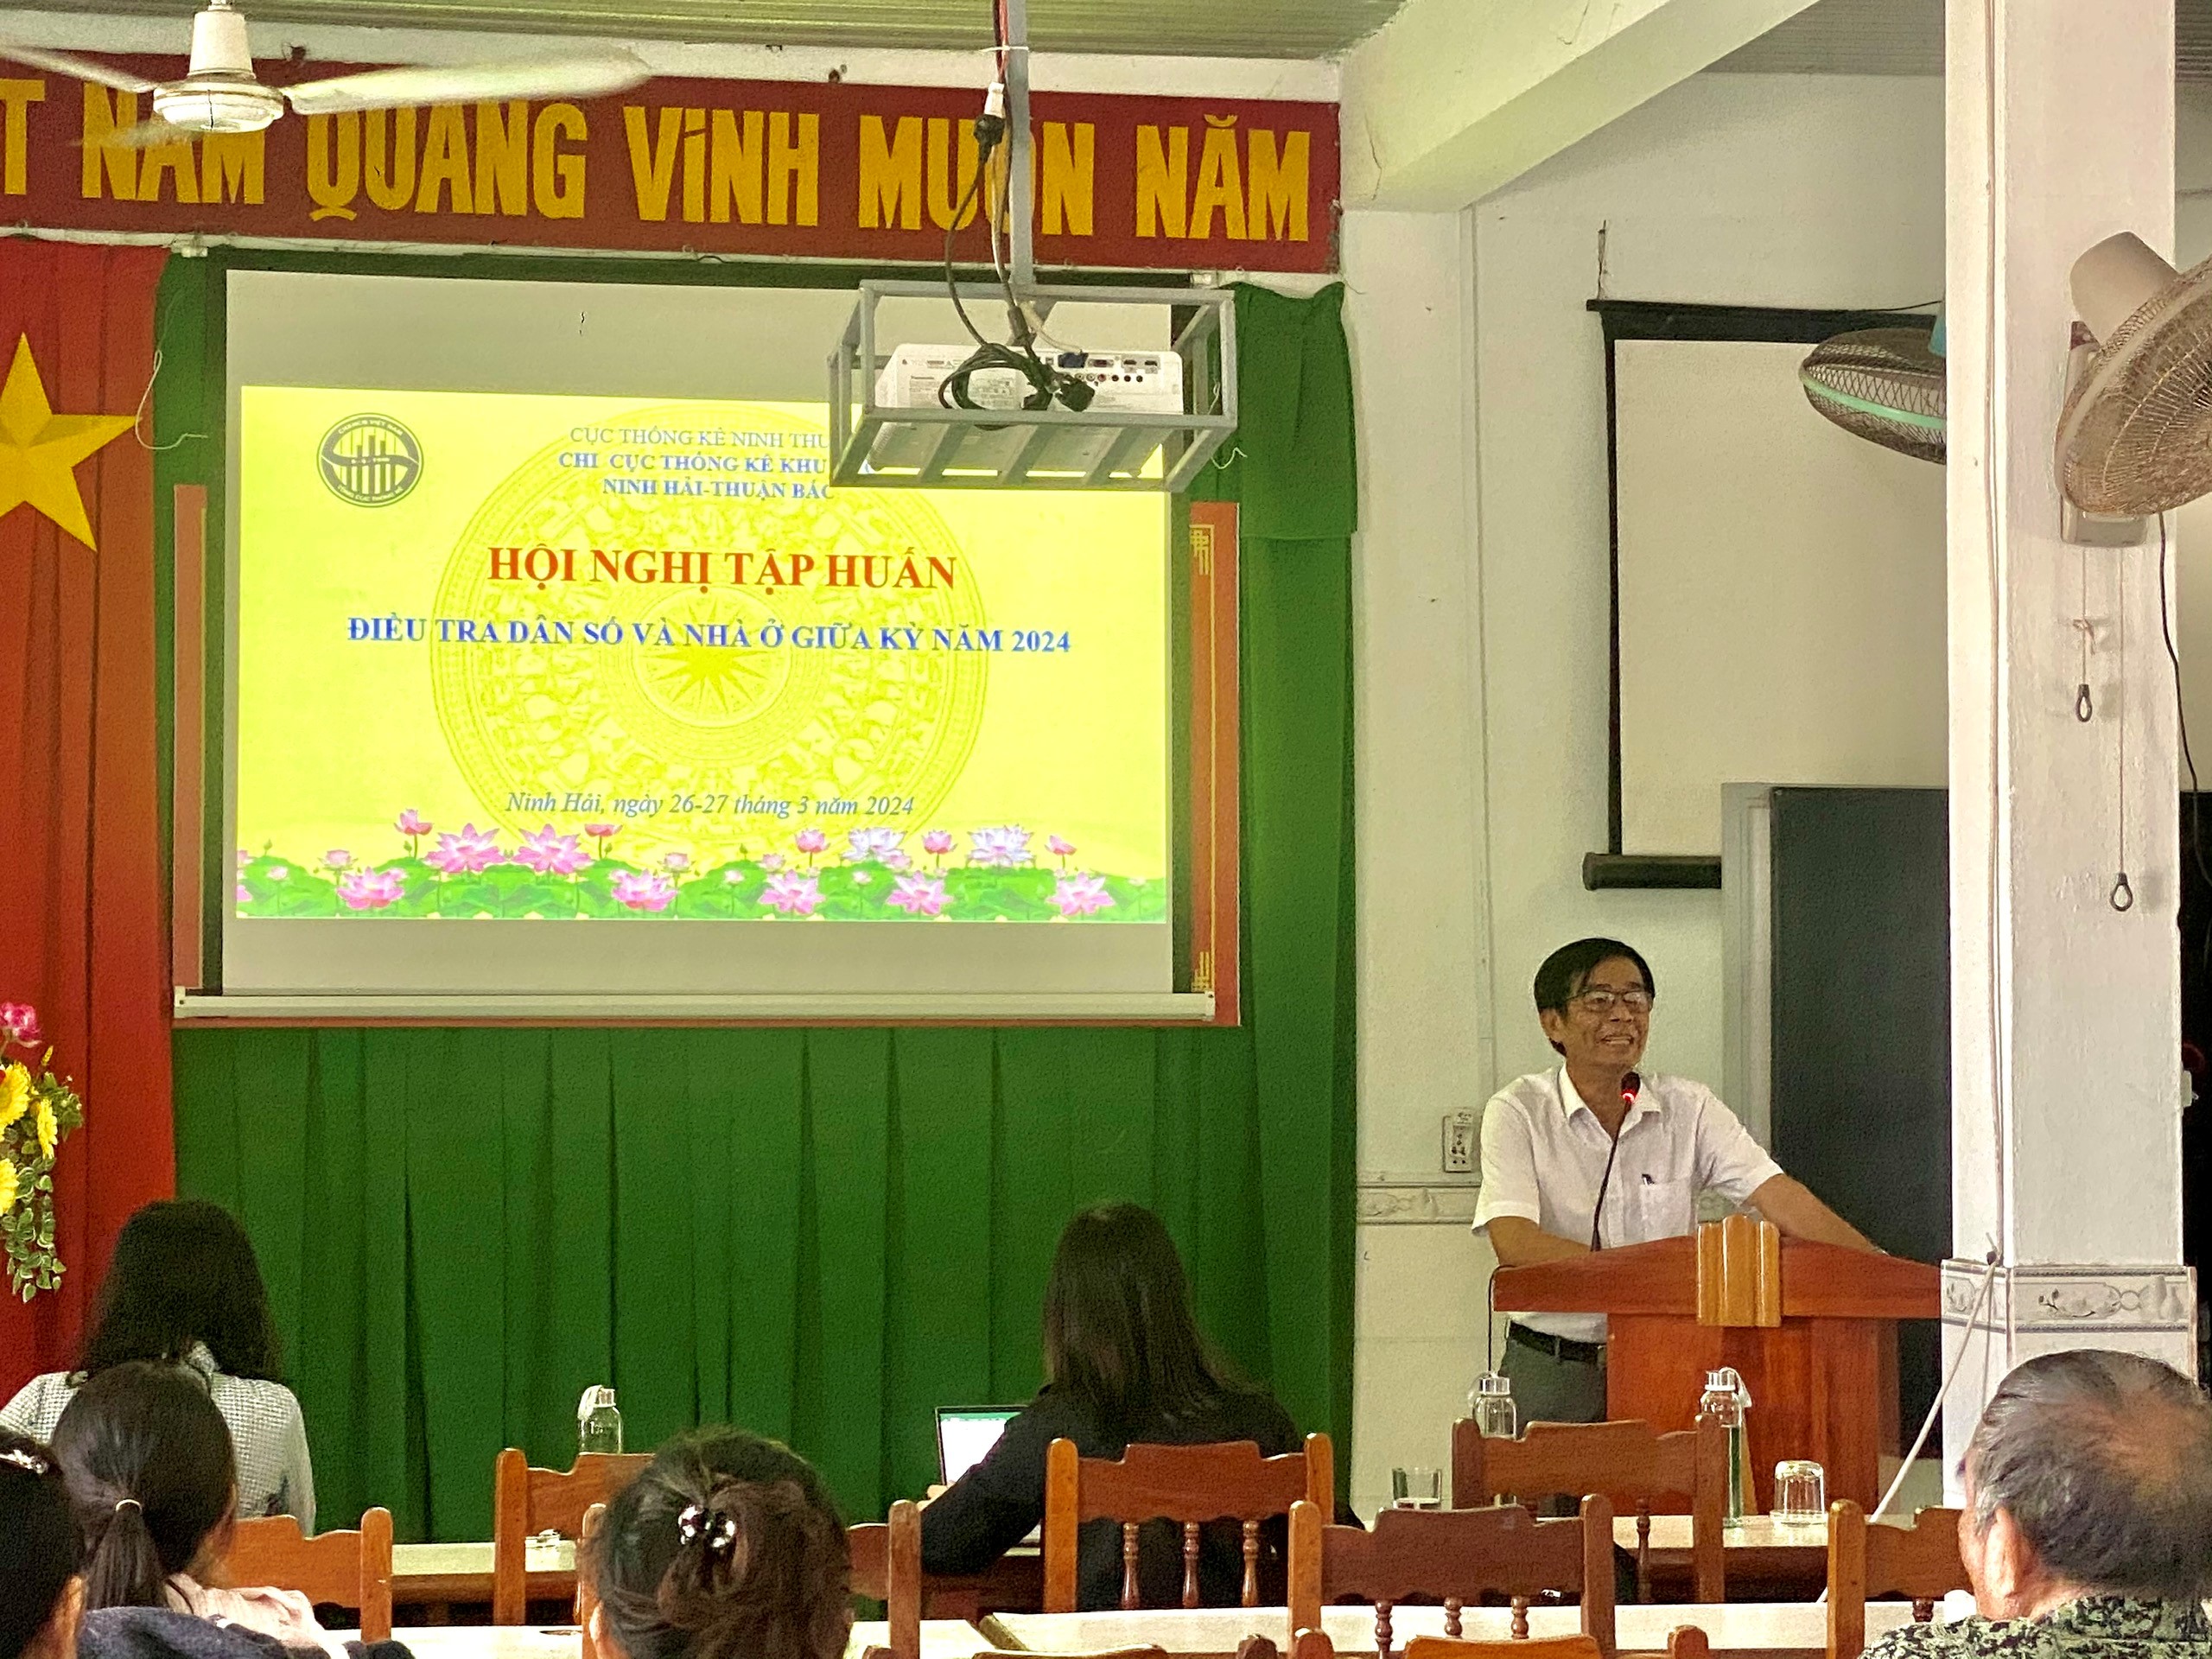 Chi cục Thống kê khu vực Ninh Hải-Thuận Bắc Hội nghị tập huấn Điều tra Dân số và nhà ở giữa kỳ năm 2024 tại huyện Ninh Hải.